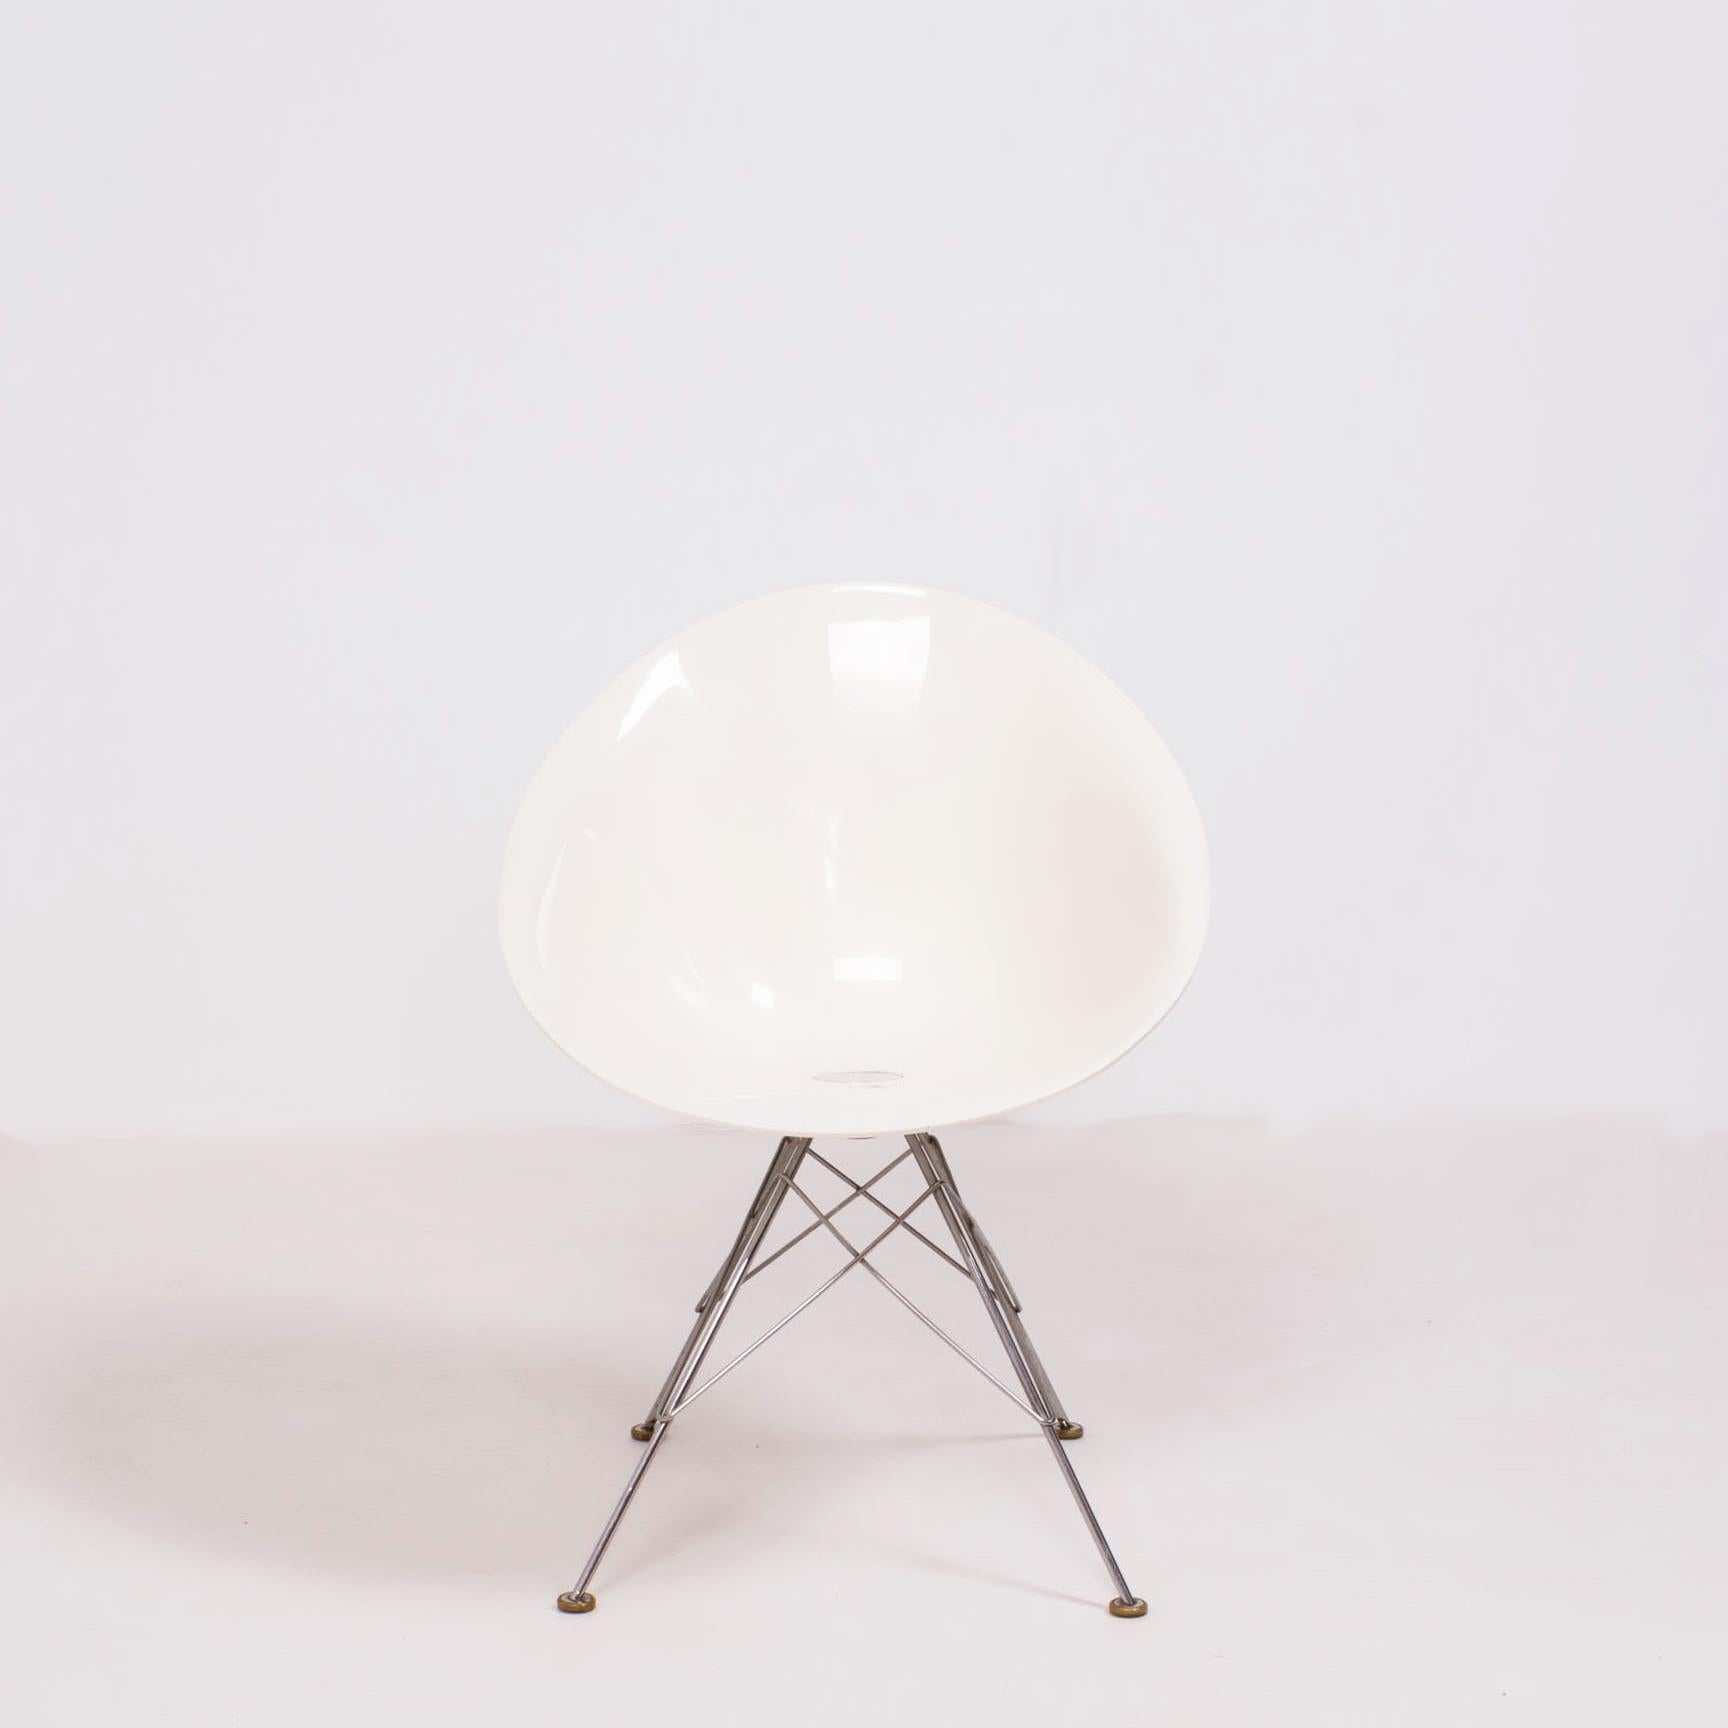 Der 1999 von Philippe Starck für Kartell entworfene Ero/S Stuhl ist von den 1960er Jahren inspiriert, hat sich aber schnell zu einem modernen Designklassiker entwickelt.

Der ovale Sitz mit seiner organischen Form ist aus weißem Polycarbonat